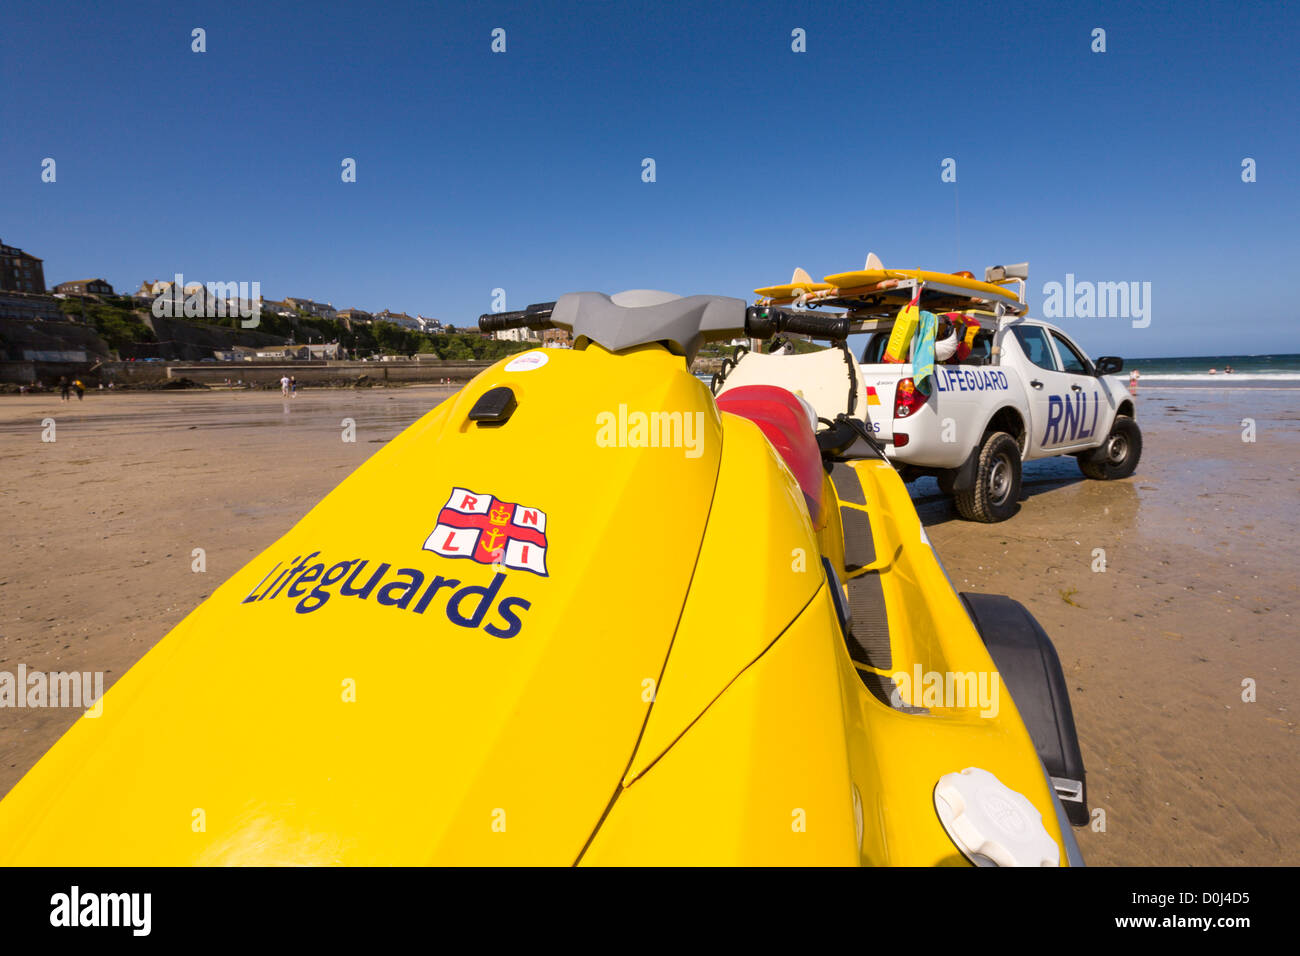 Bagnino RNLI veicolo e tavole da surf mantenendo vegli su Great Western Beach, Newquay, Cornwall Foto Stock